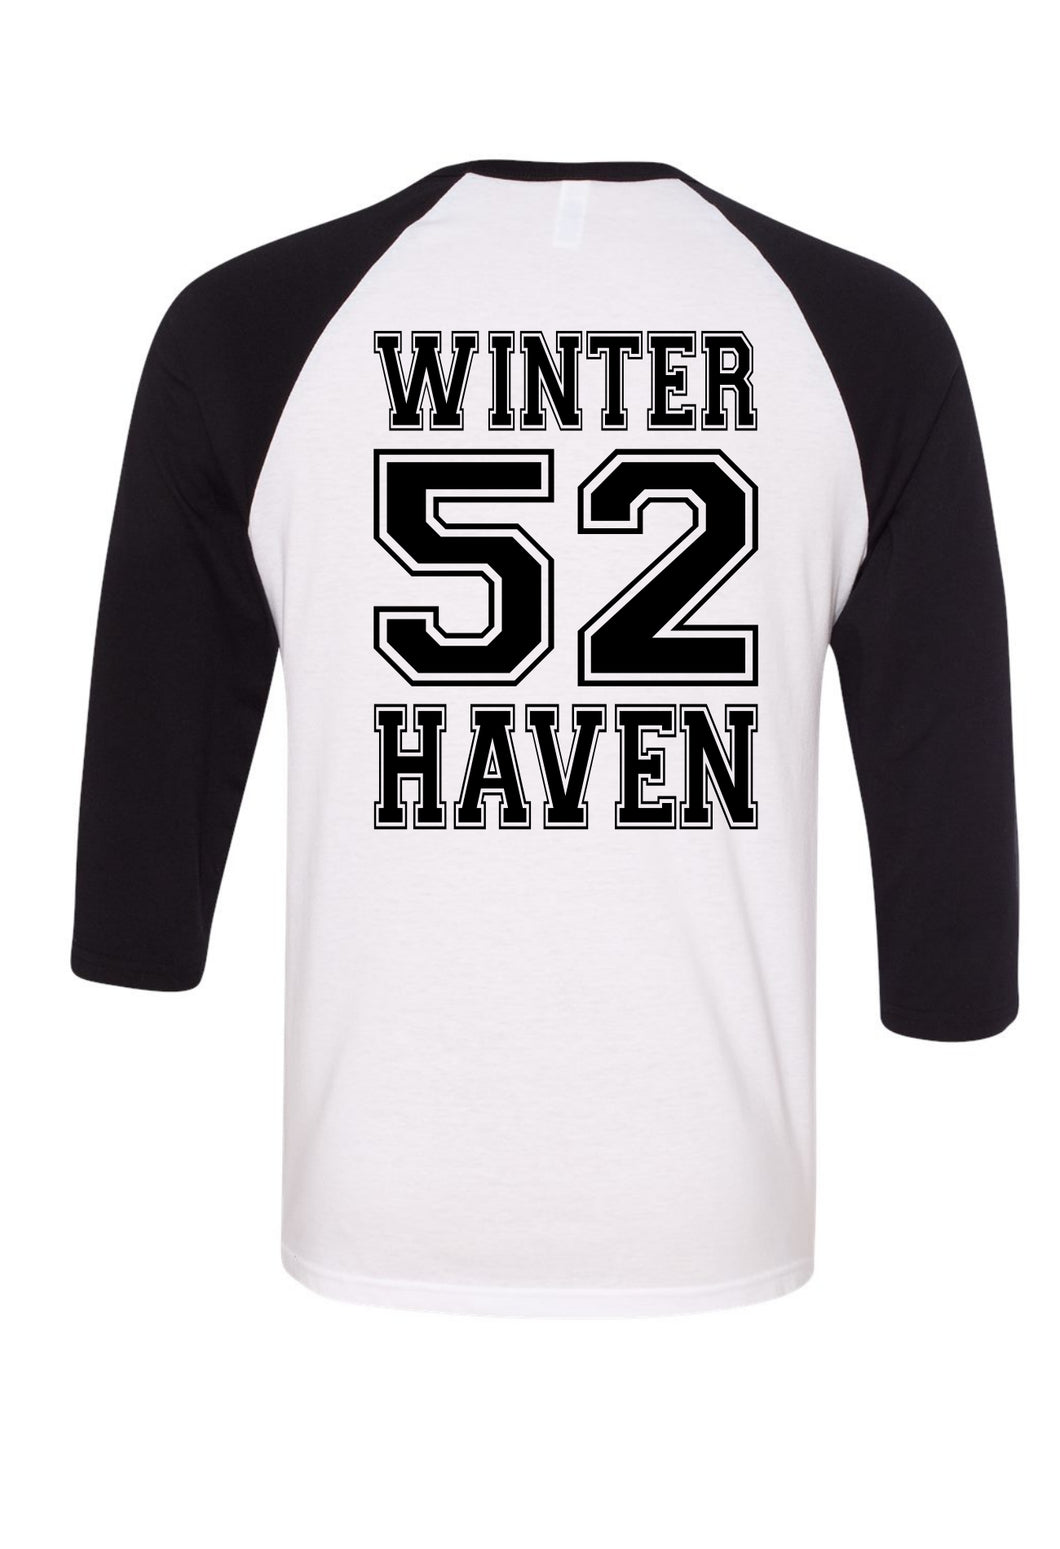 WinterHaven Team Shirt